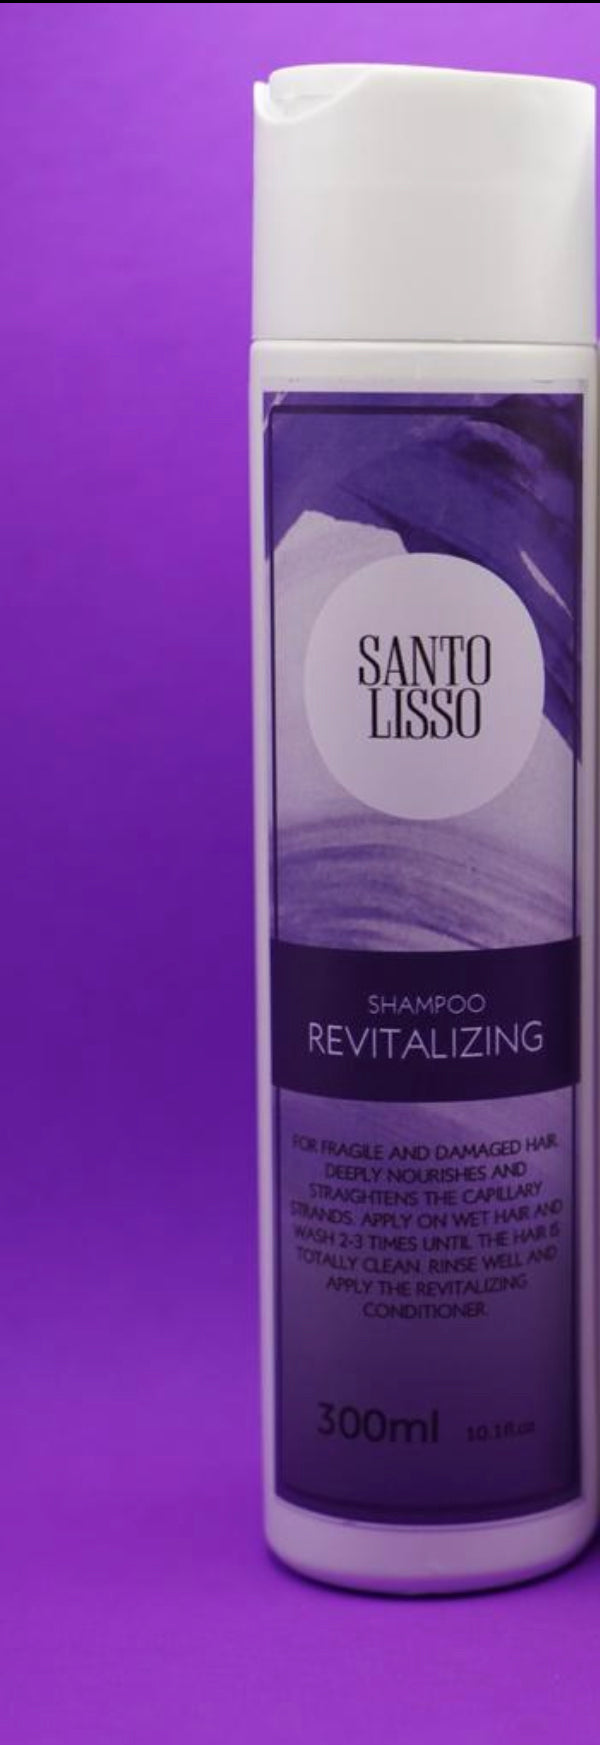 Shampoo Revitalizante